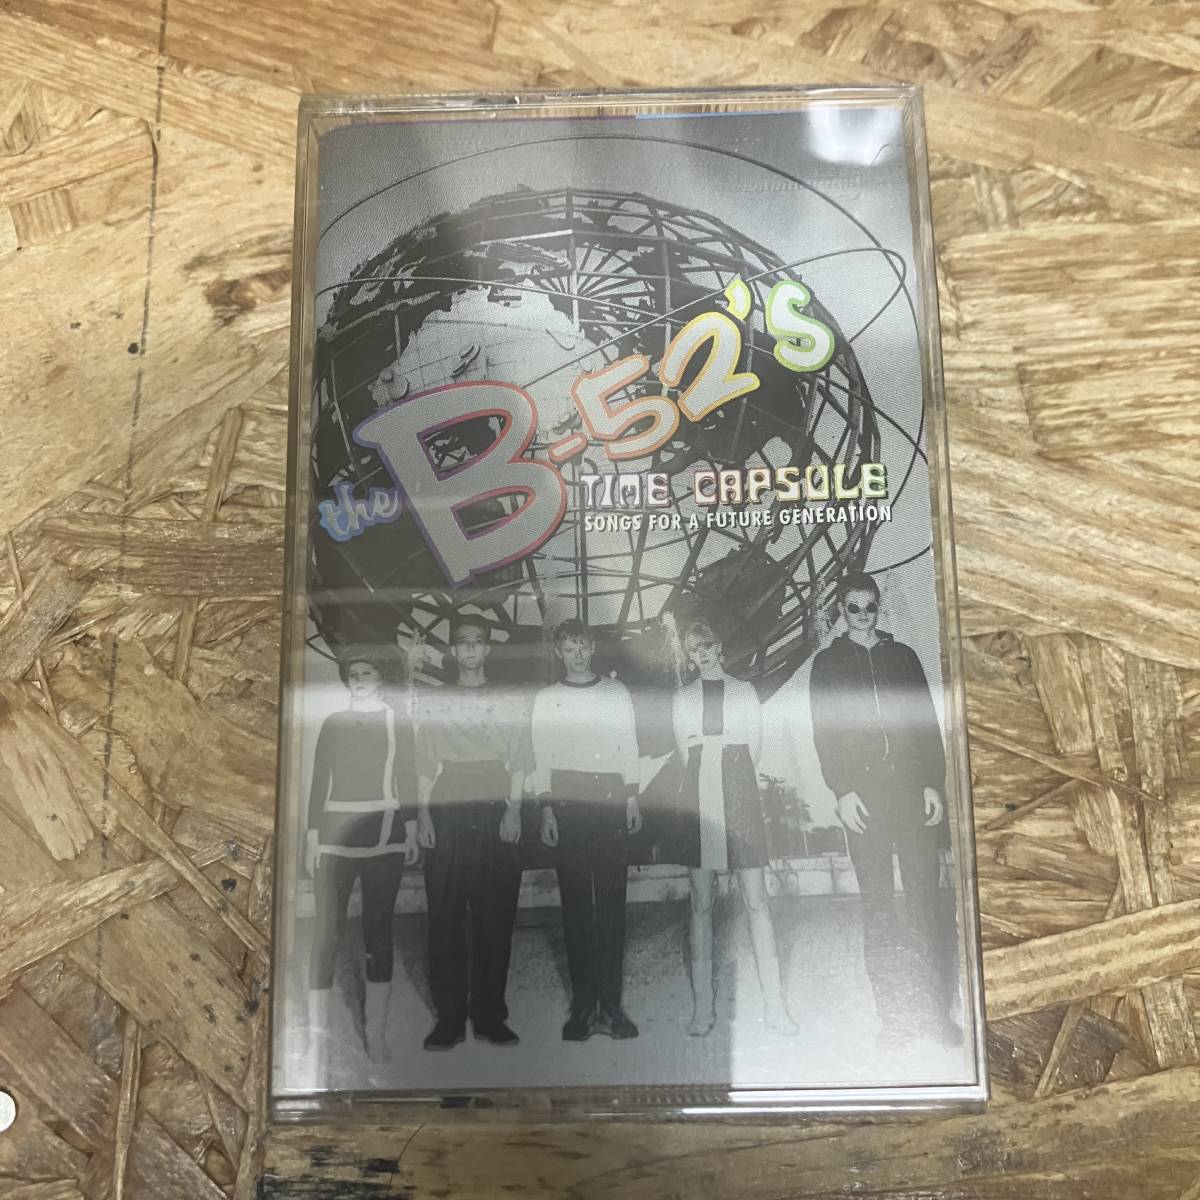 シPOPS,ROCK THE B-52'S - TIME CAPSULE アルバム TAPE 中古品の画像1